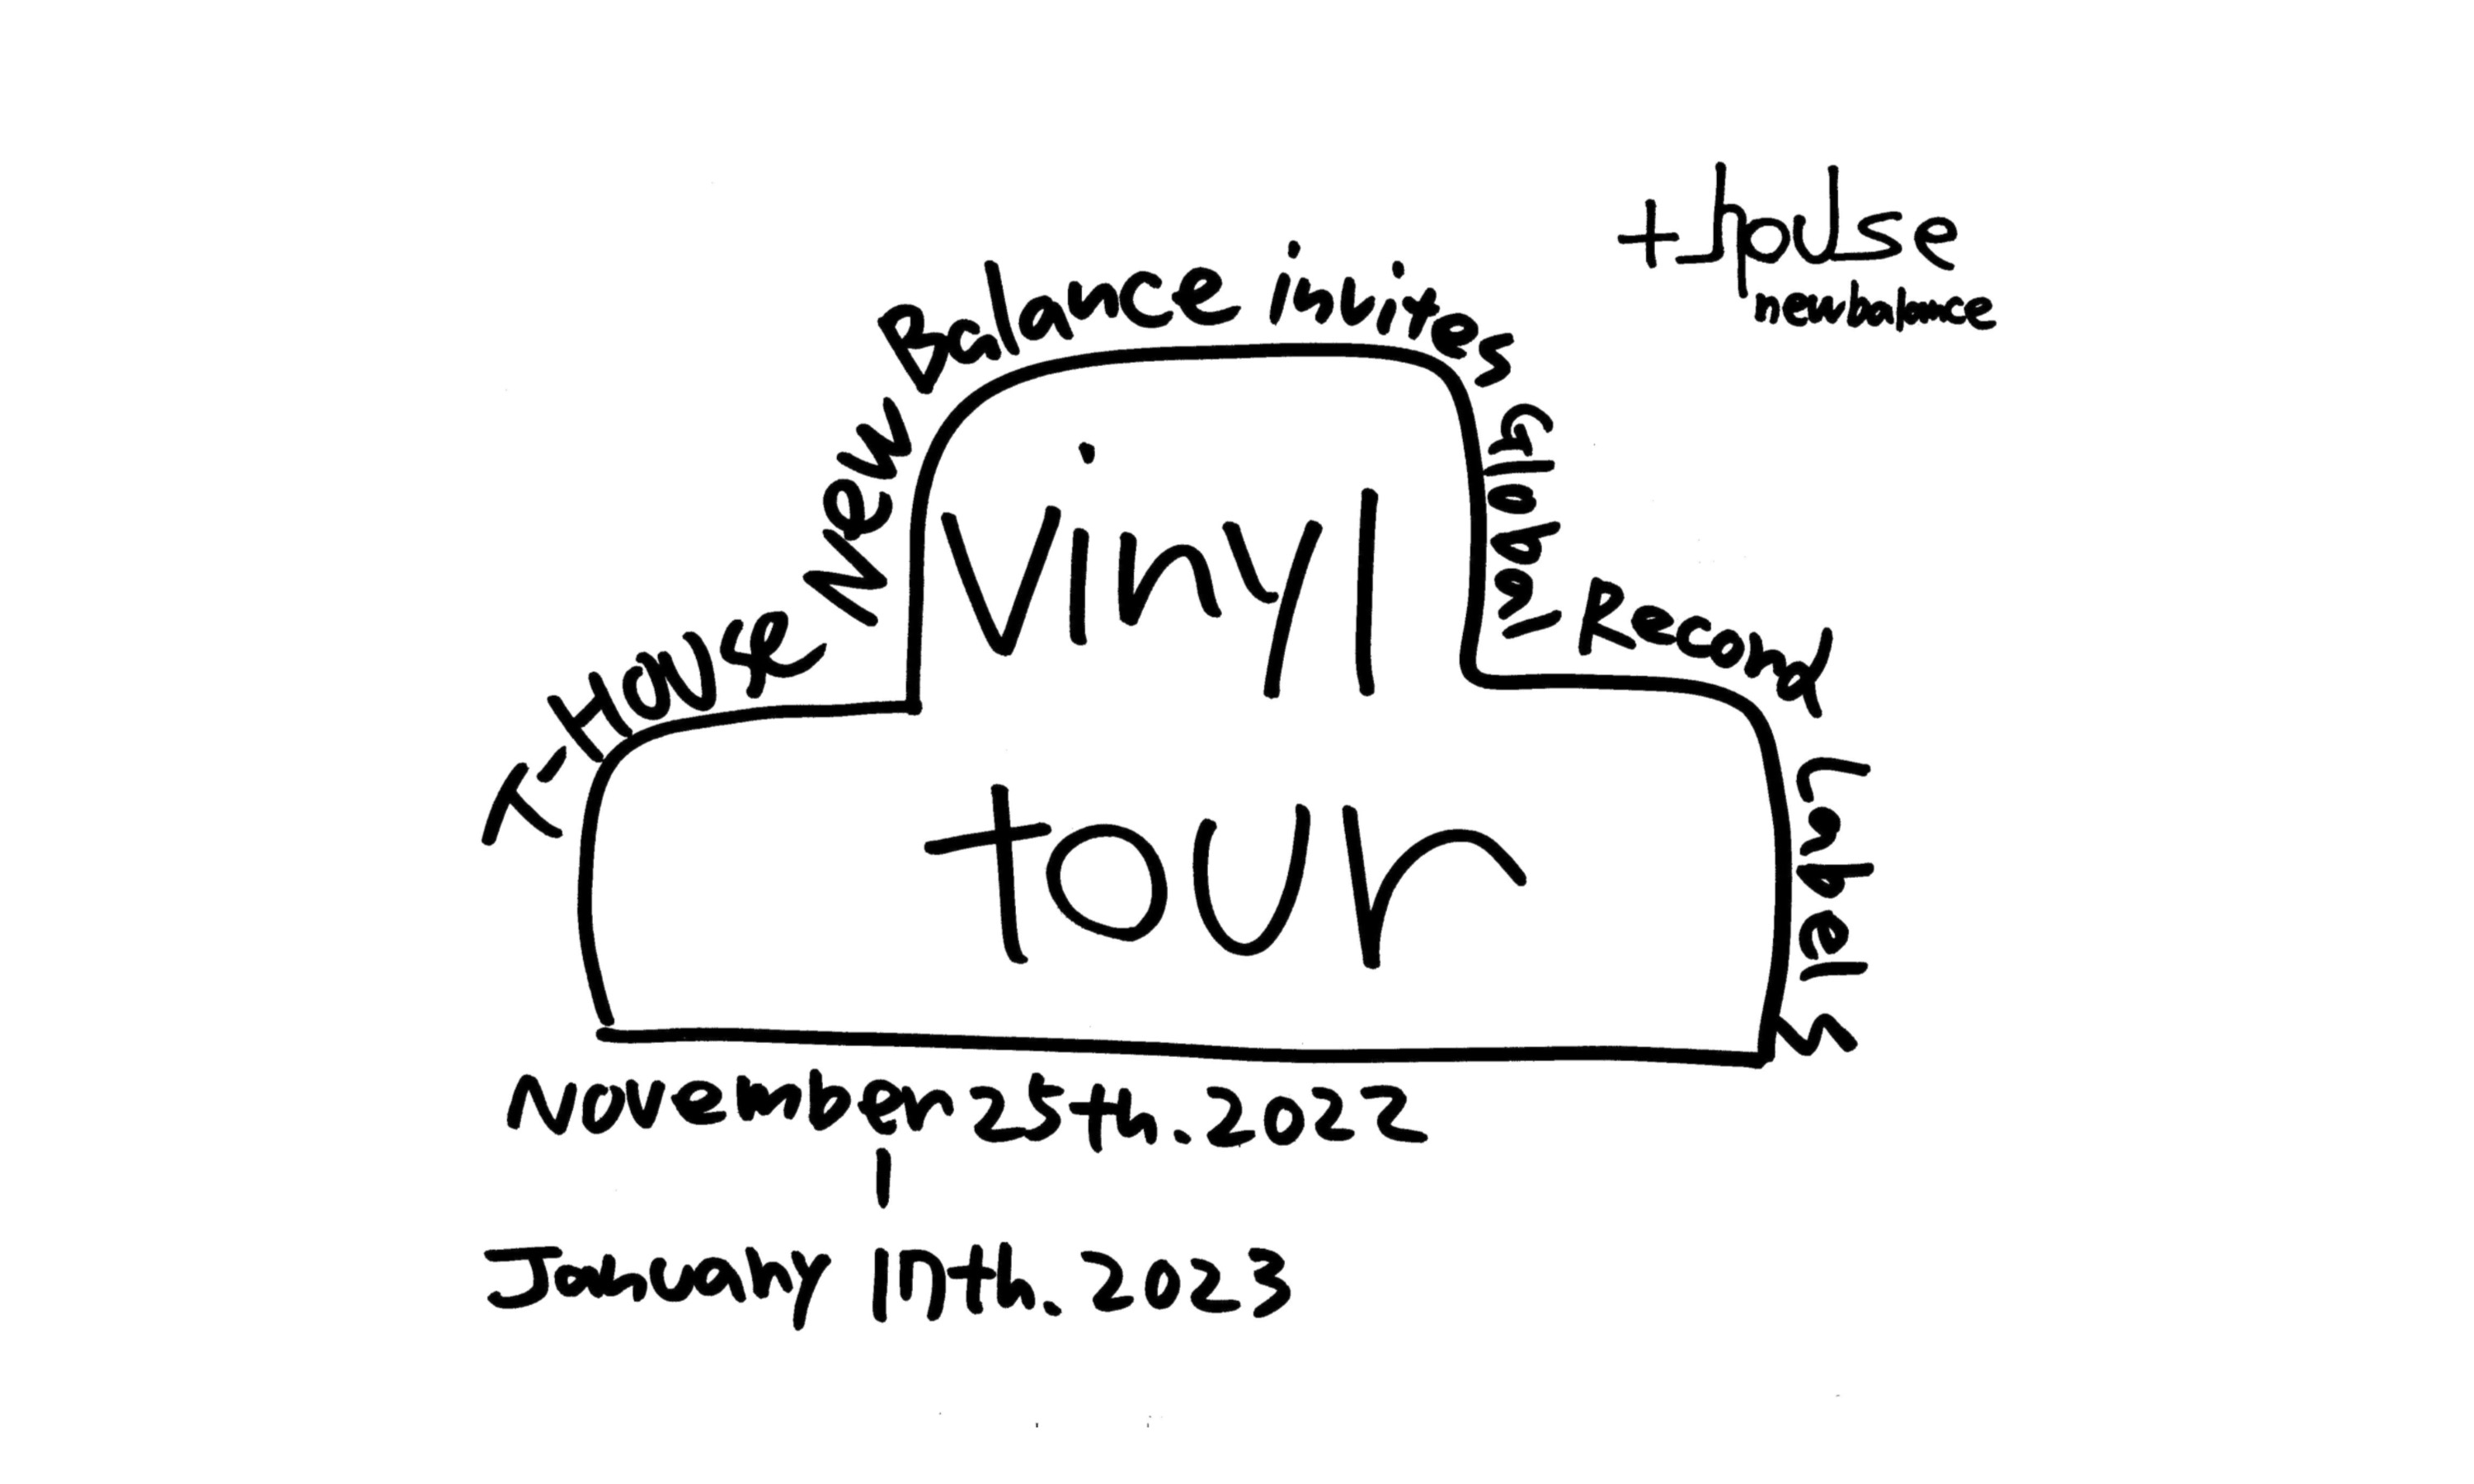 T-HOUSE New Balance、世界8カ国のレコードレーベル集うインスタレーション開催